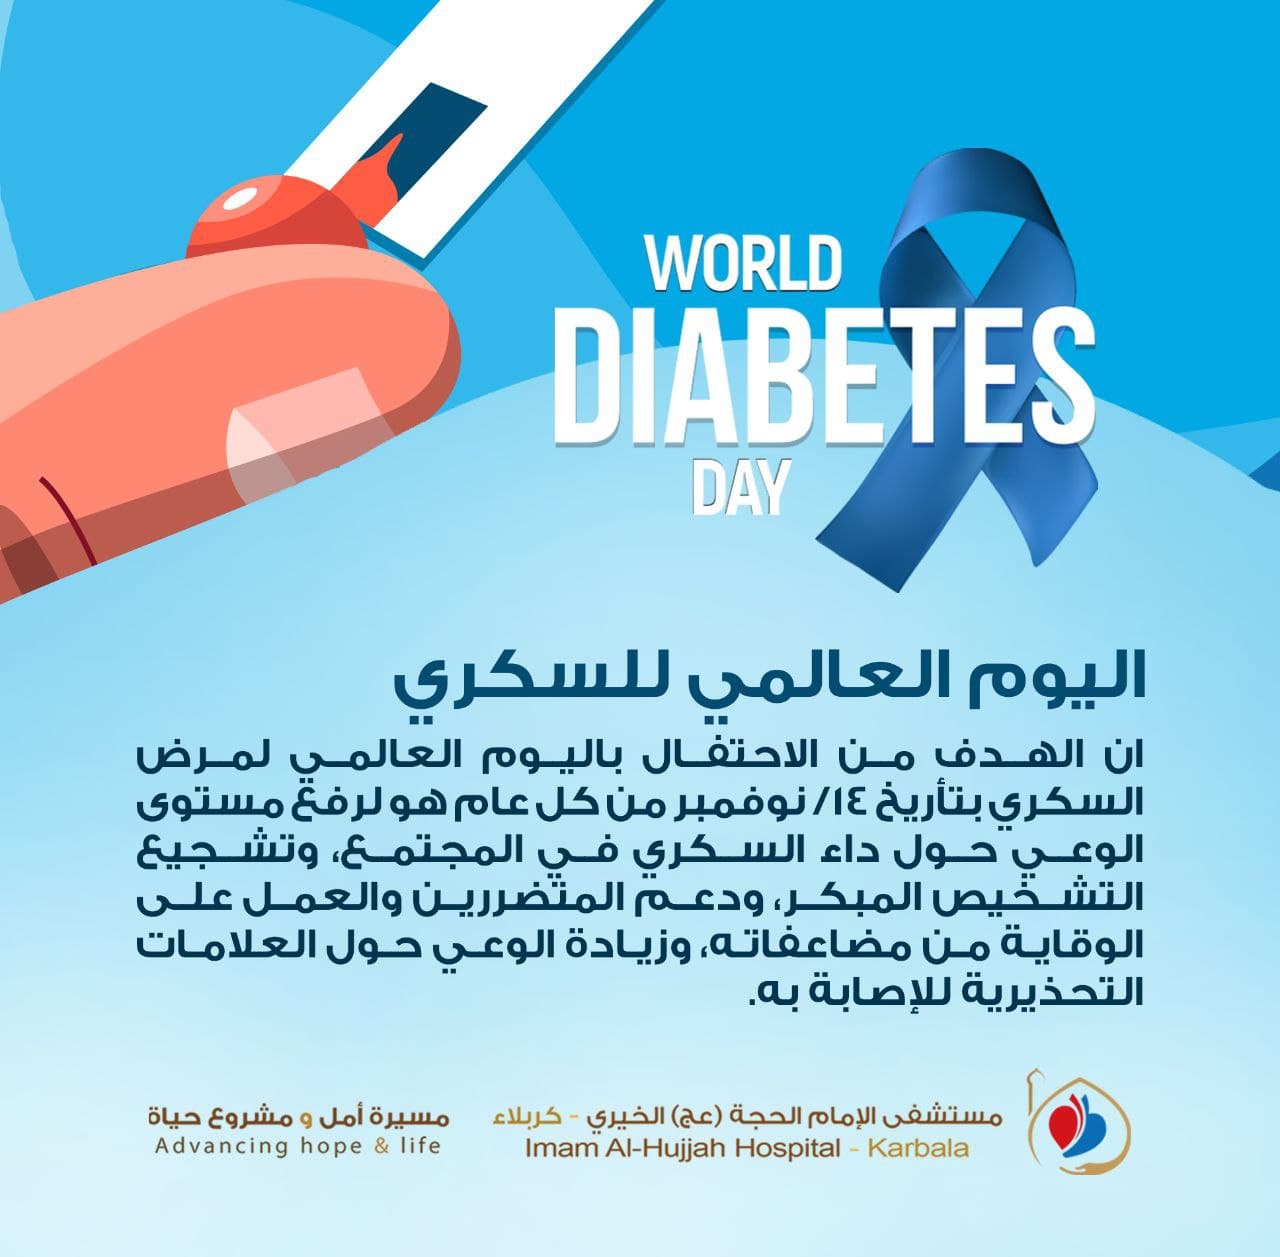 World Diabetes Day - مستشفى الامام الحجة عج الخيري